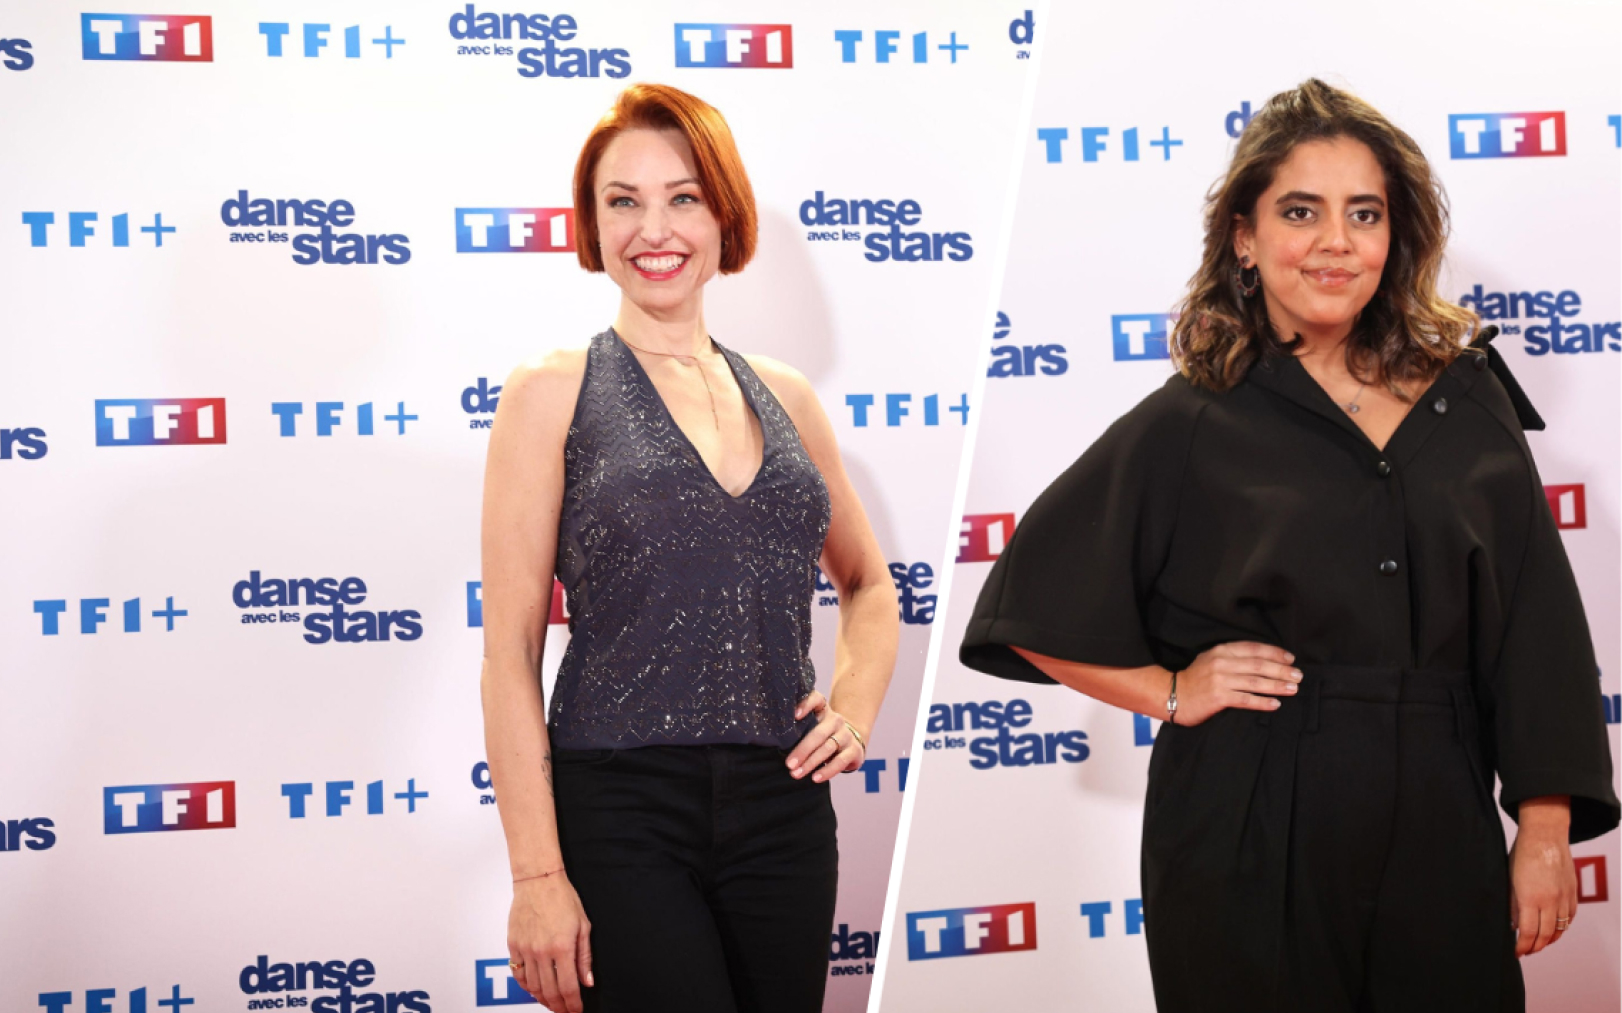 Natasha St-Pier et Inès Reg lors de la conférence de presse d’annonce de « Danse avec les stars ». LP/Fred Dugit